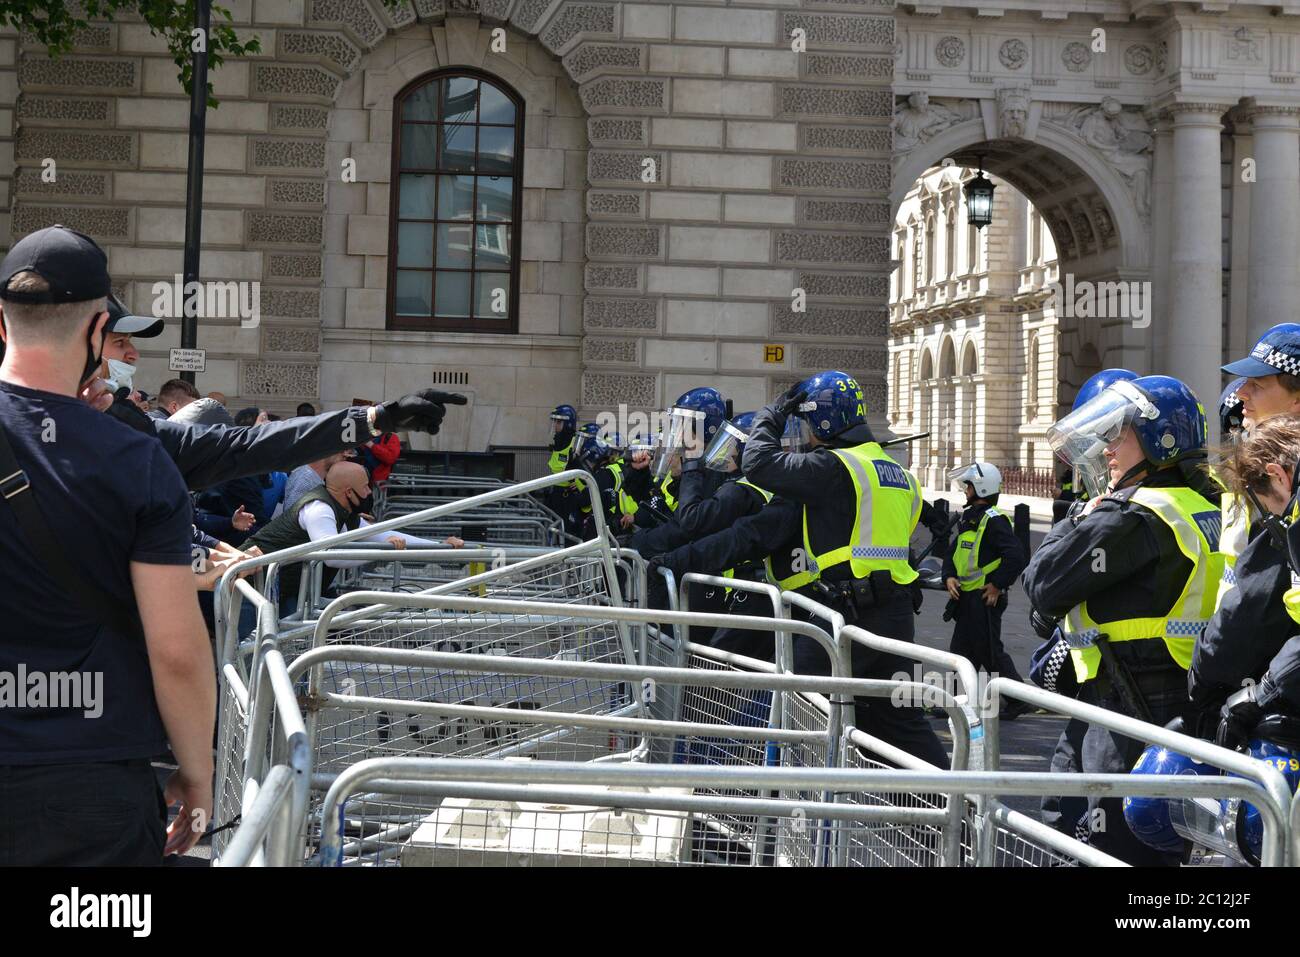 La polizia è stata impigliata con bottiglie e riacutizzazioni durante violenti scontri con i manifestanti di estrema destra nel centro di Londra Foto Stock